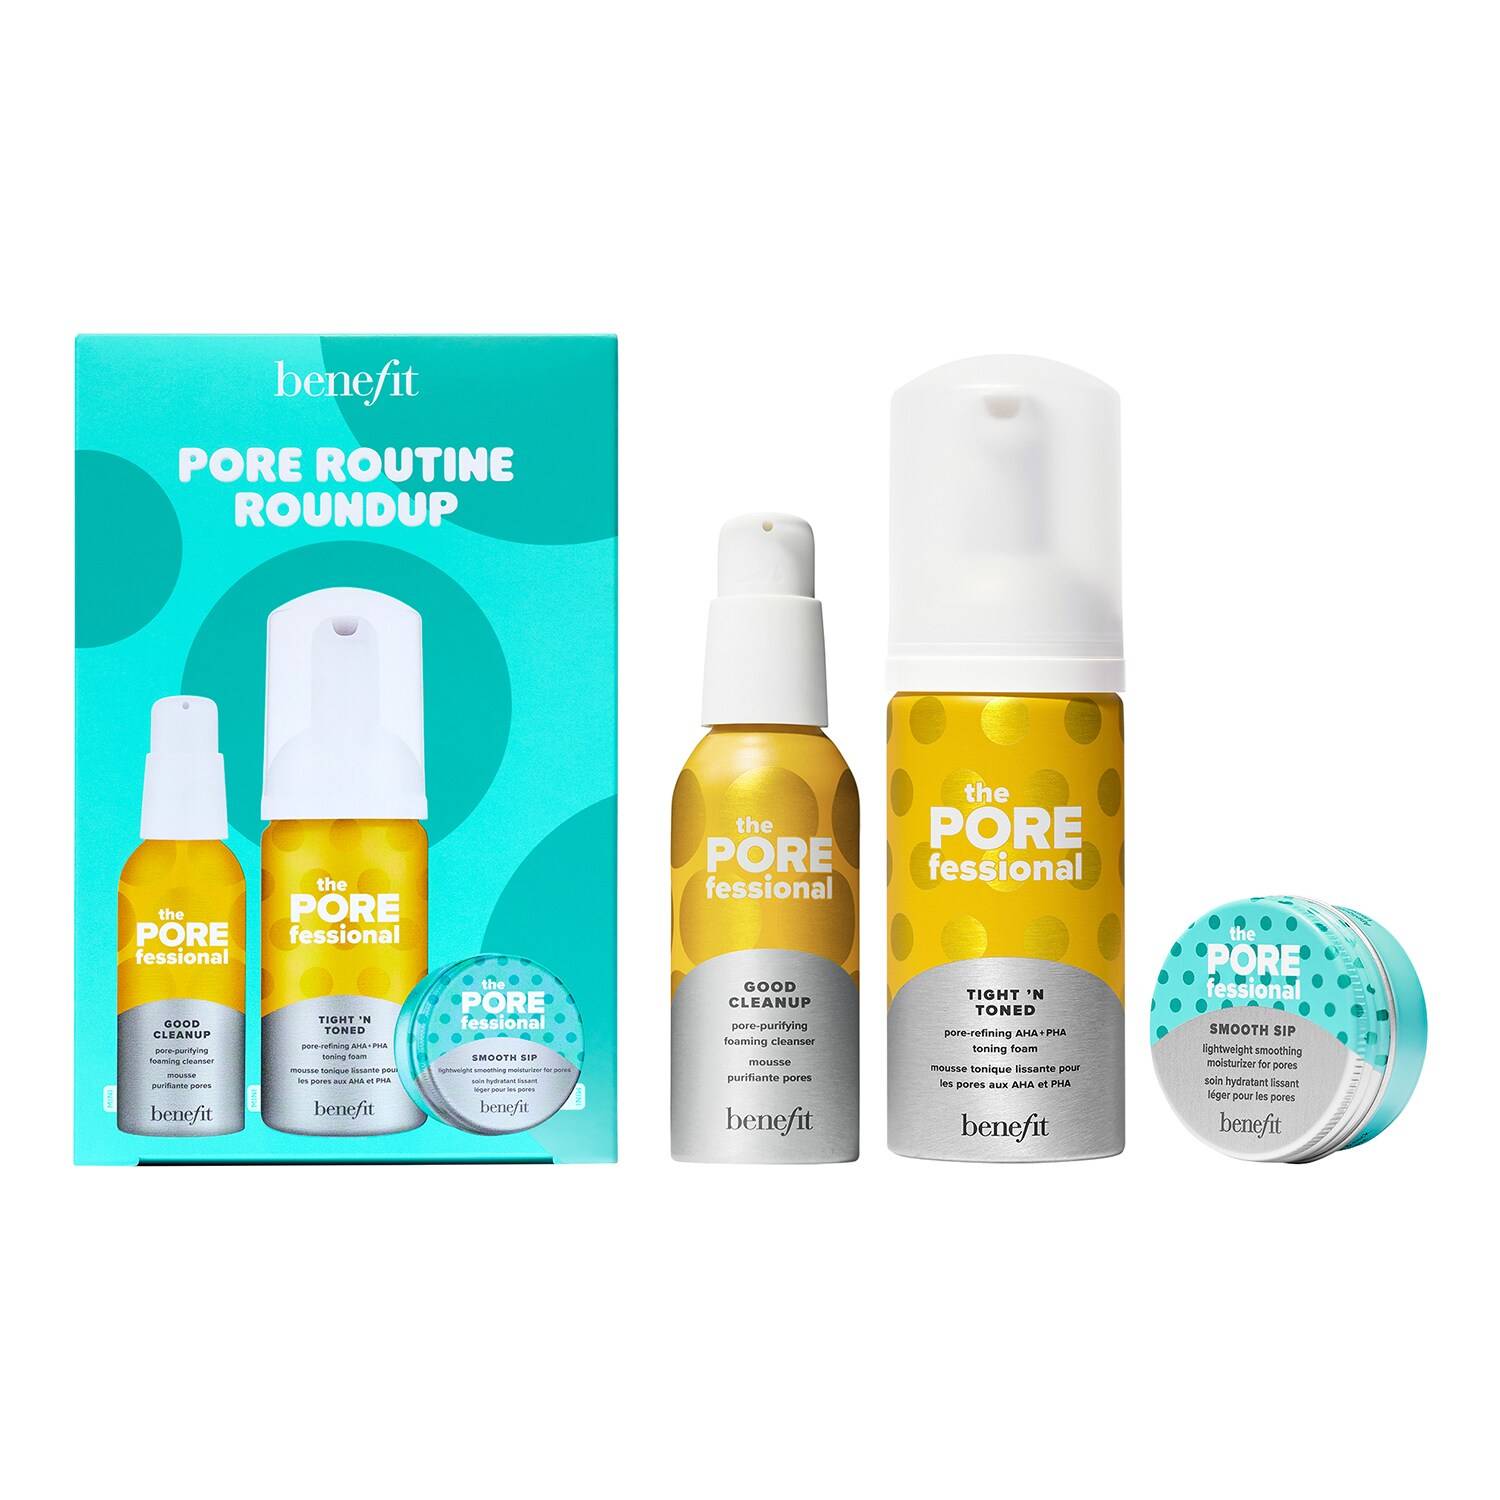 Benefit Cosmetics Pore Routine Roundup Set